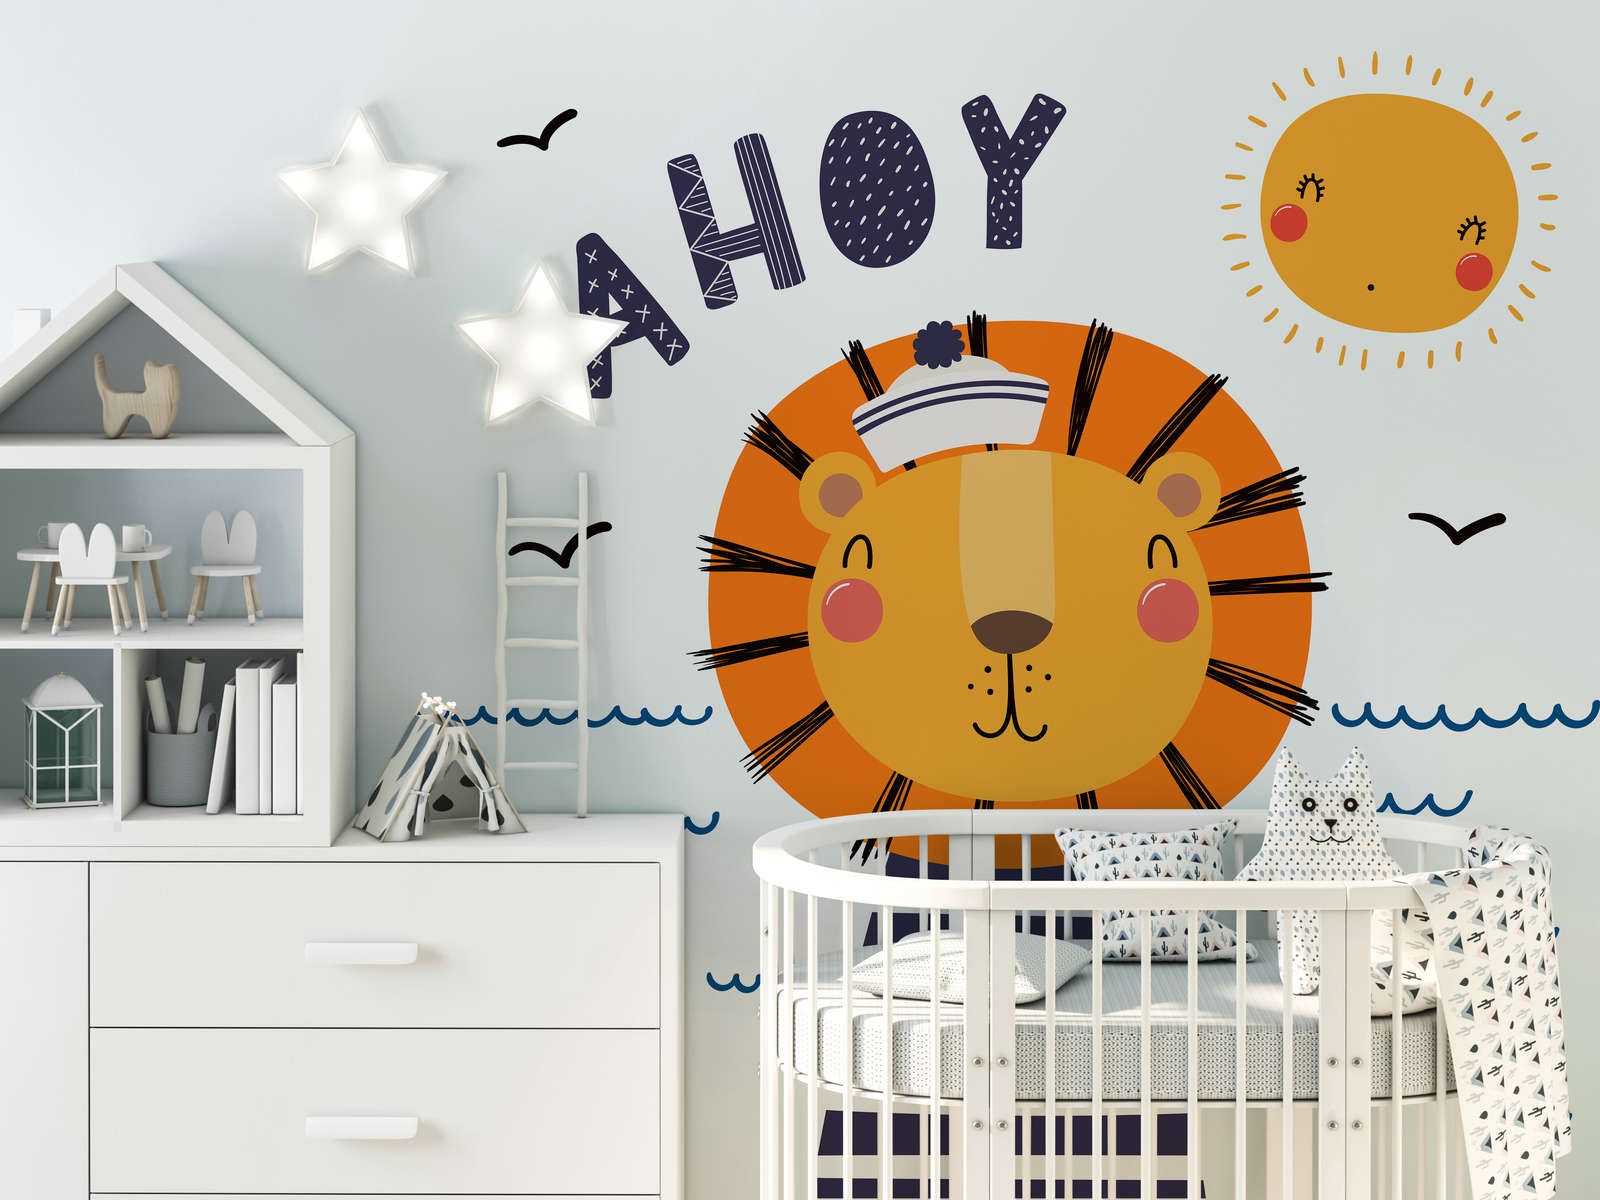             Fototapete fürs Kinderzimmer mit Löwen-Pirat – Glattes & leicht glänzendes Vlies
        